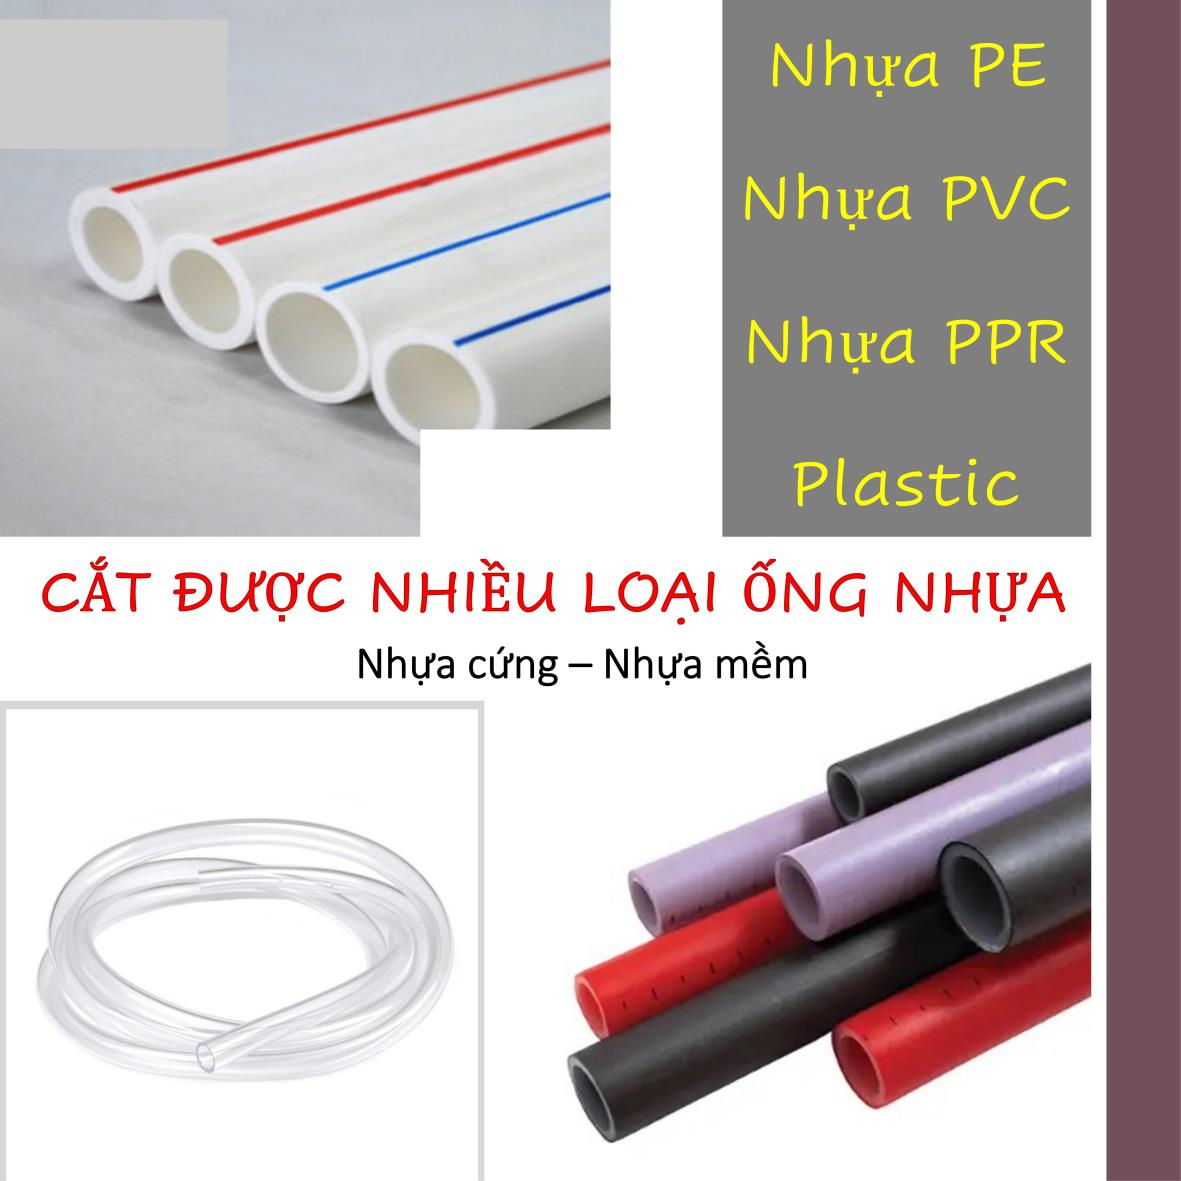 Dao cắt ống nhựa, Kìm cắt ống nhựa - Cắt được các loại ống nhưa mềm cứng khác nhau - Cắt kích thước ống tối đa 42mm - Cắt nhựa PVC - Nhựa PE - Plastic - Cầm chắc tay - Mẫu mã đẹp